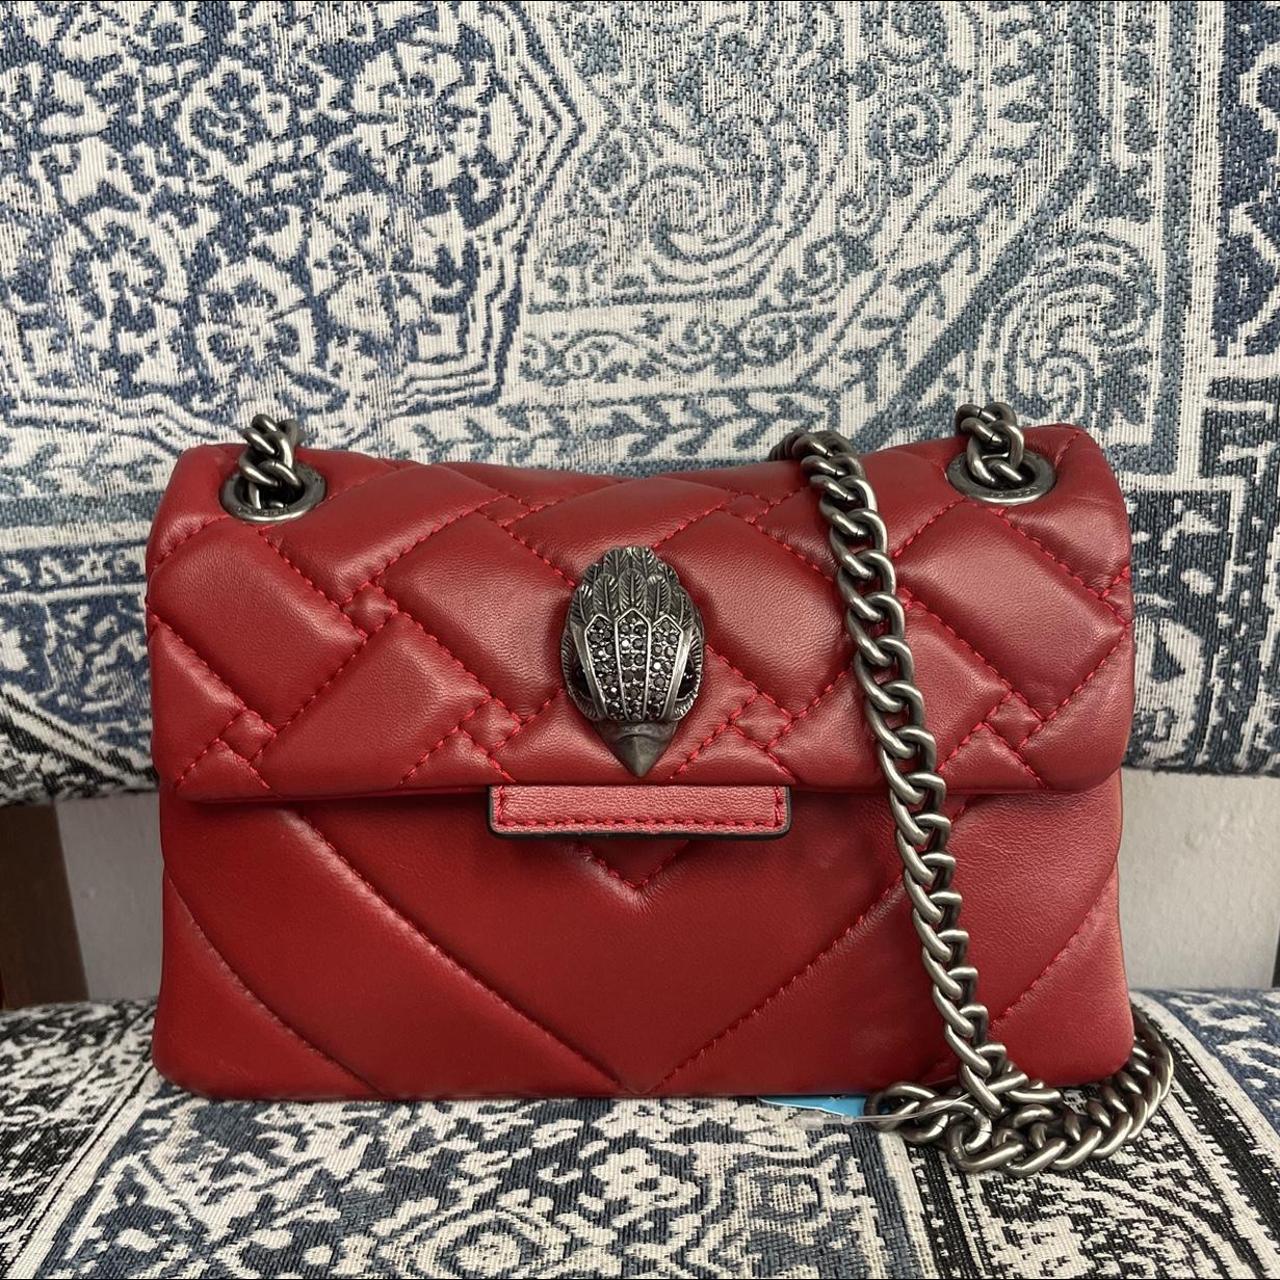 Kurt Geiger Women's Red and Silver Bag